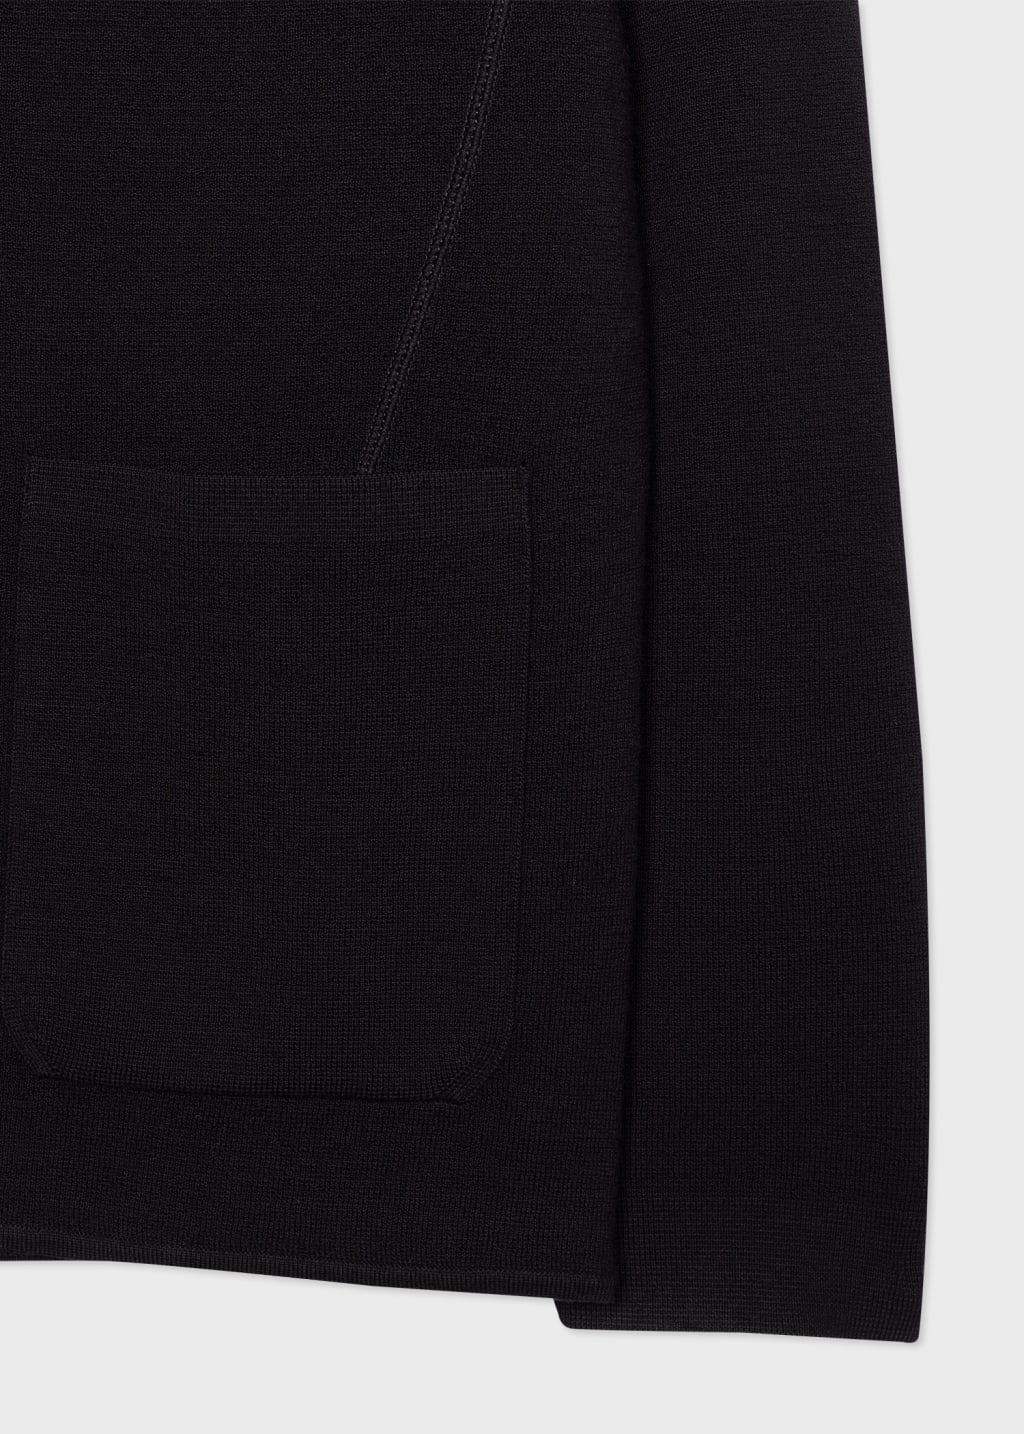 Men's Black Merino Wool Cardigan Blazer